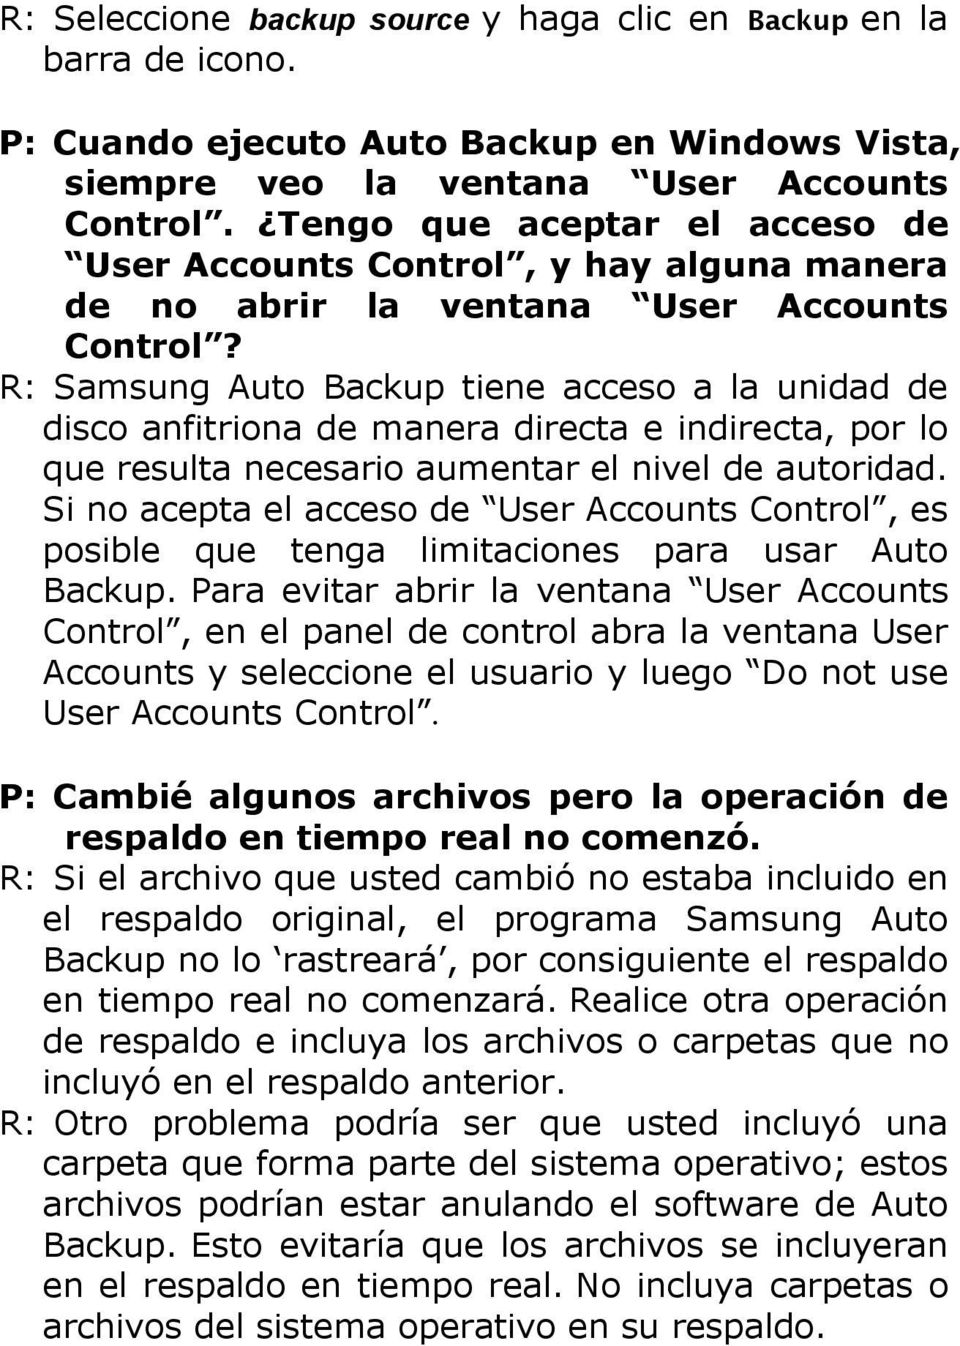 R: Samsung Auto Backup tiene acceso a la unidad de disco anfitriona de manera directa e indirecta, por lo que resulta necesario aumentar el nivel de autoridad.